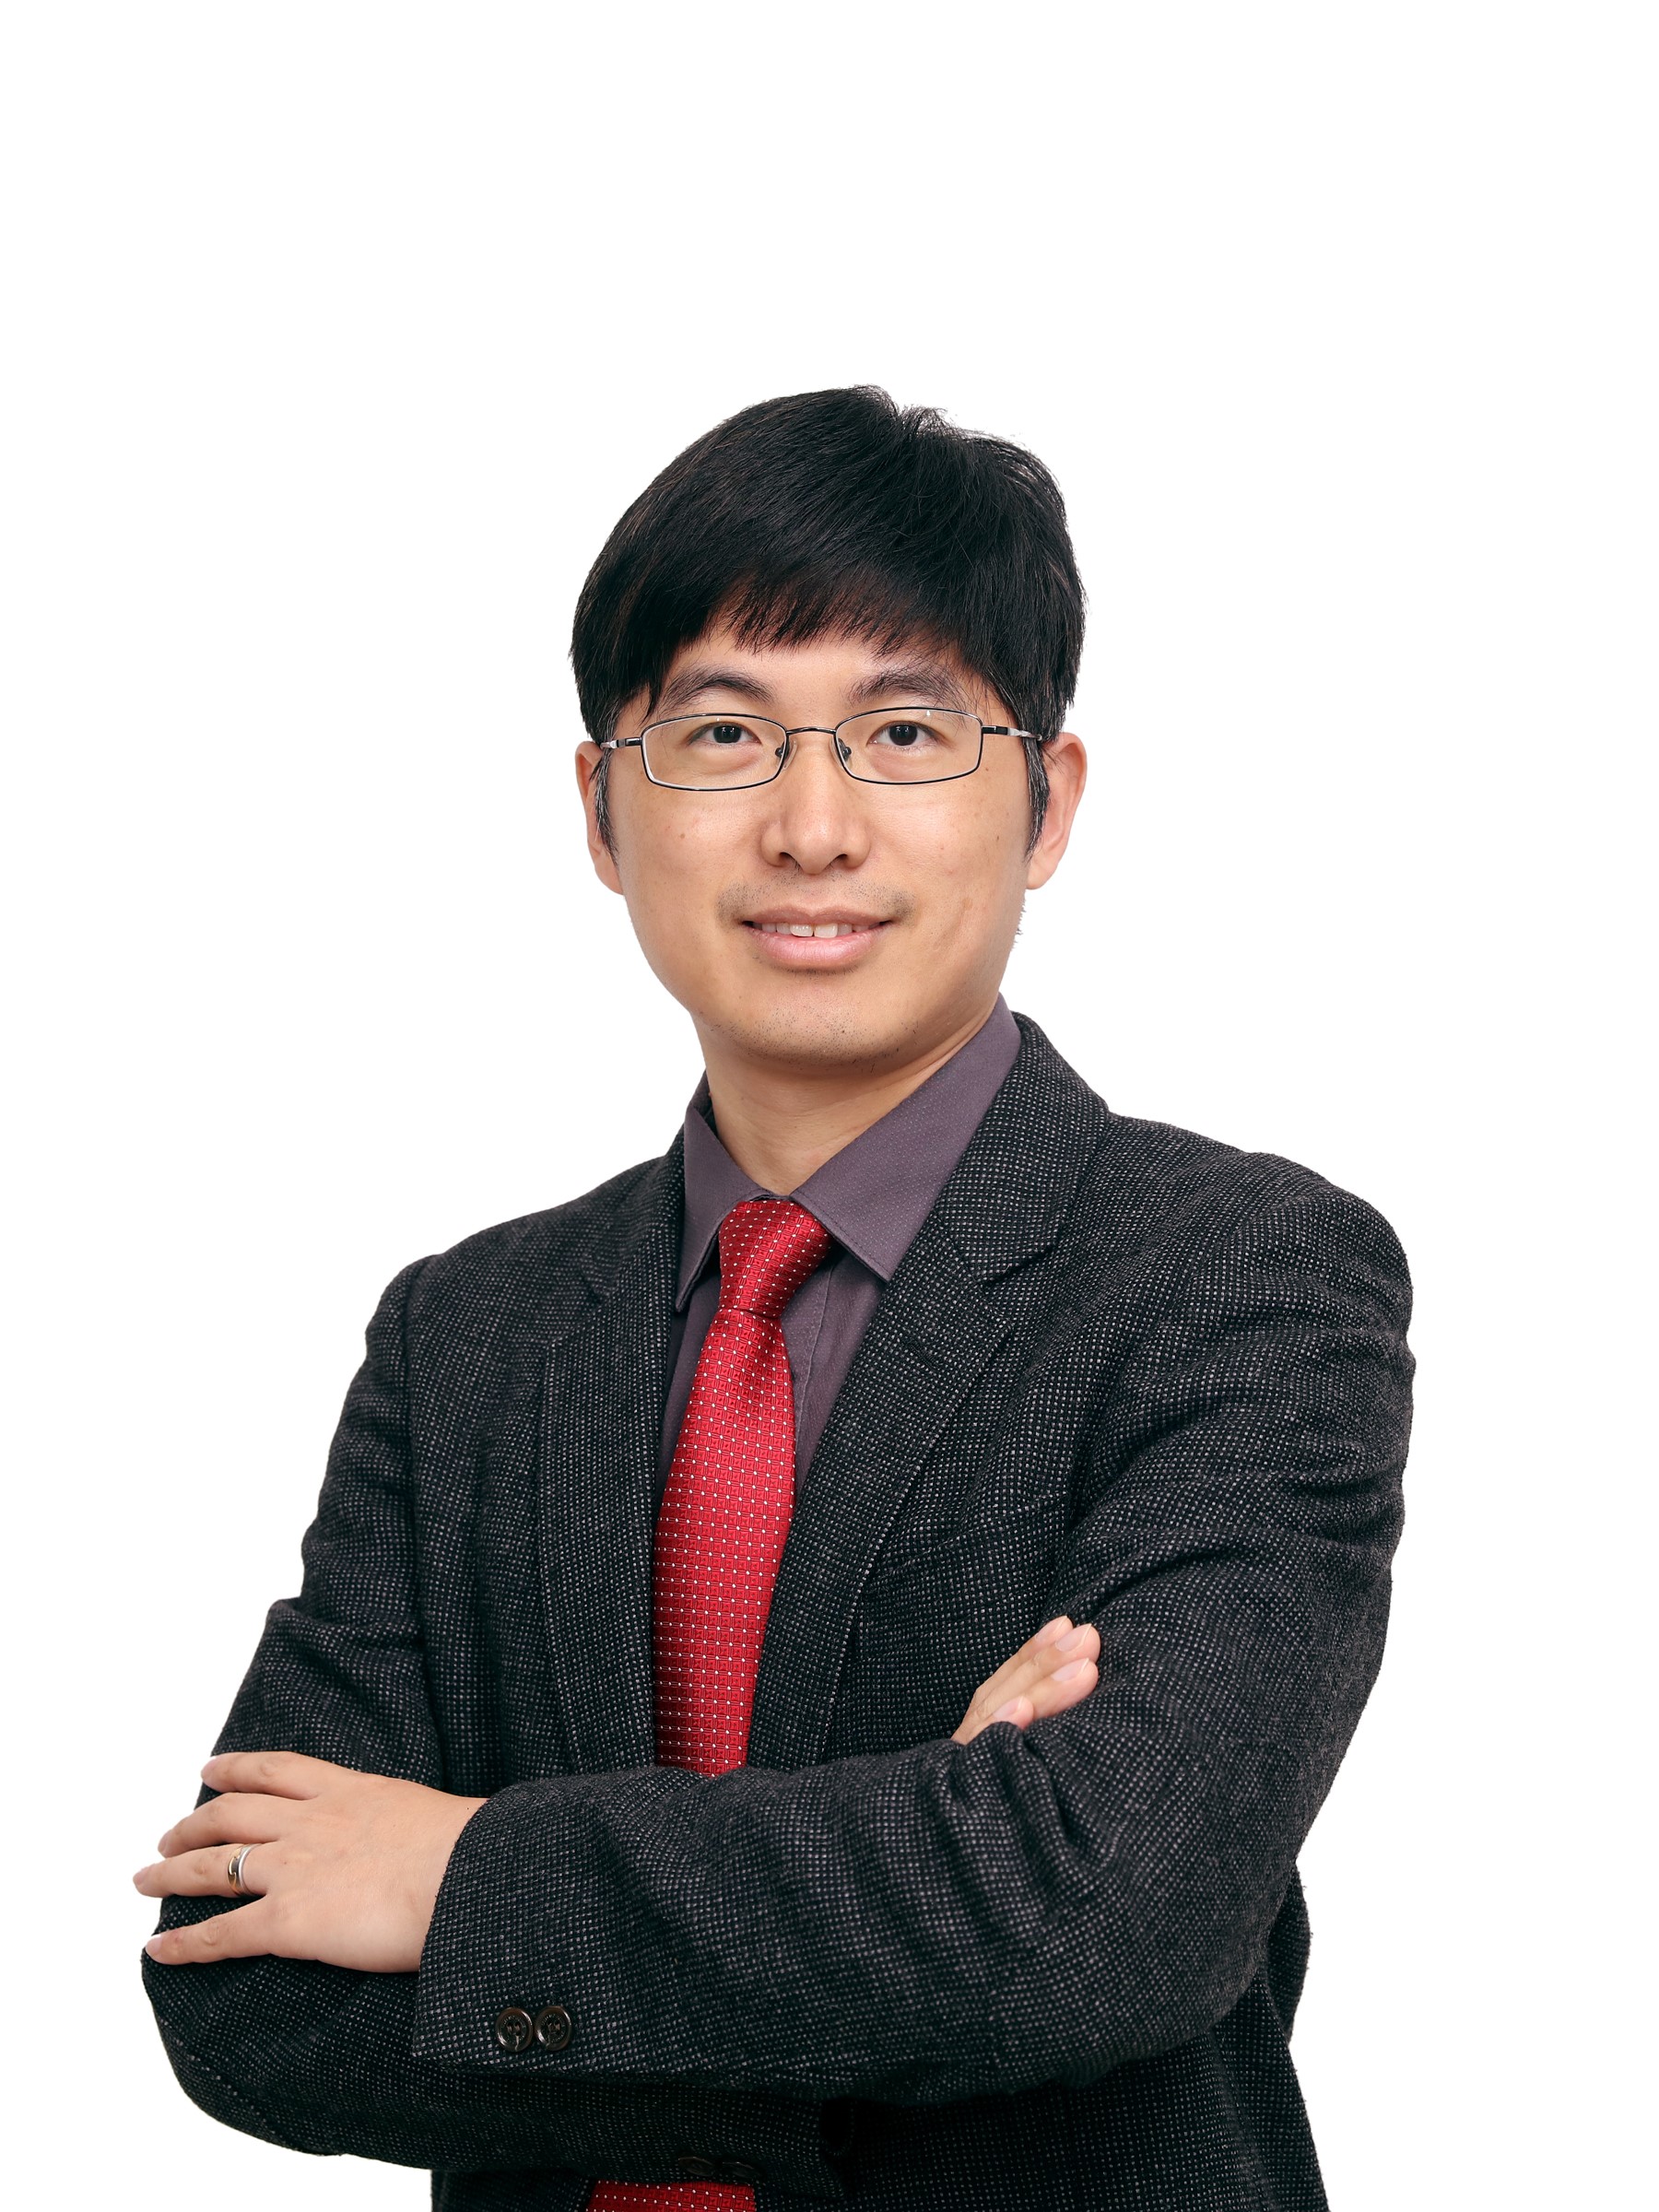 南方科技大学教授Dr. Liang Yang